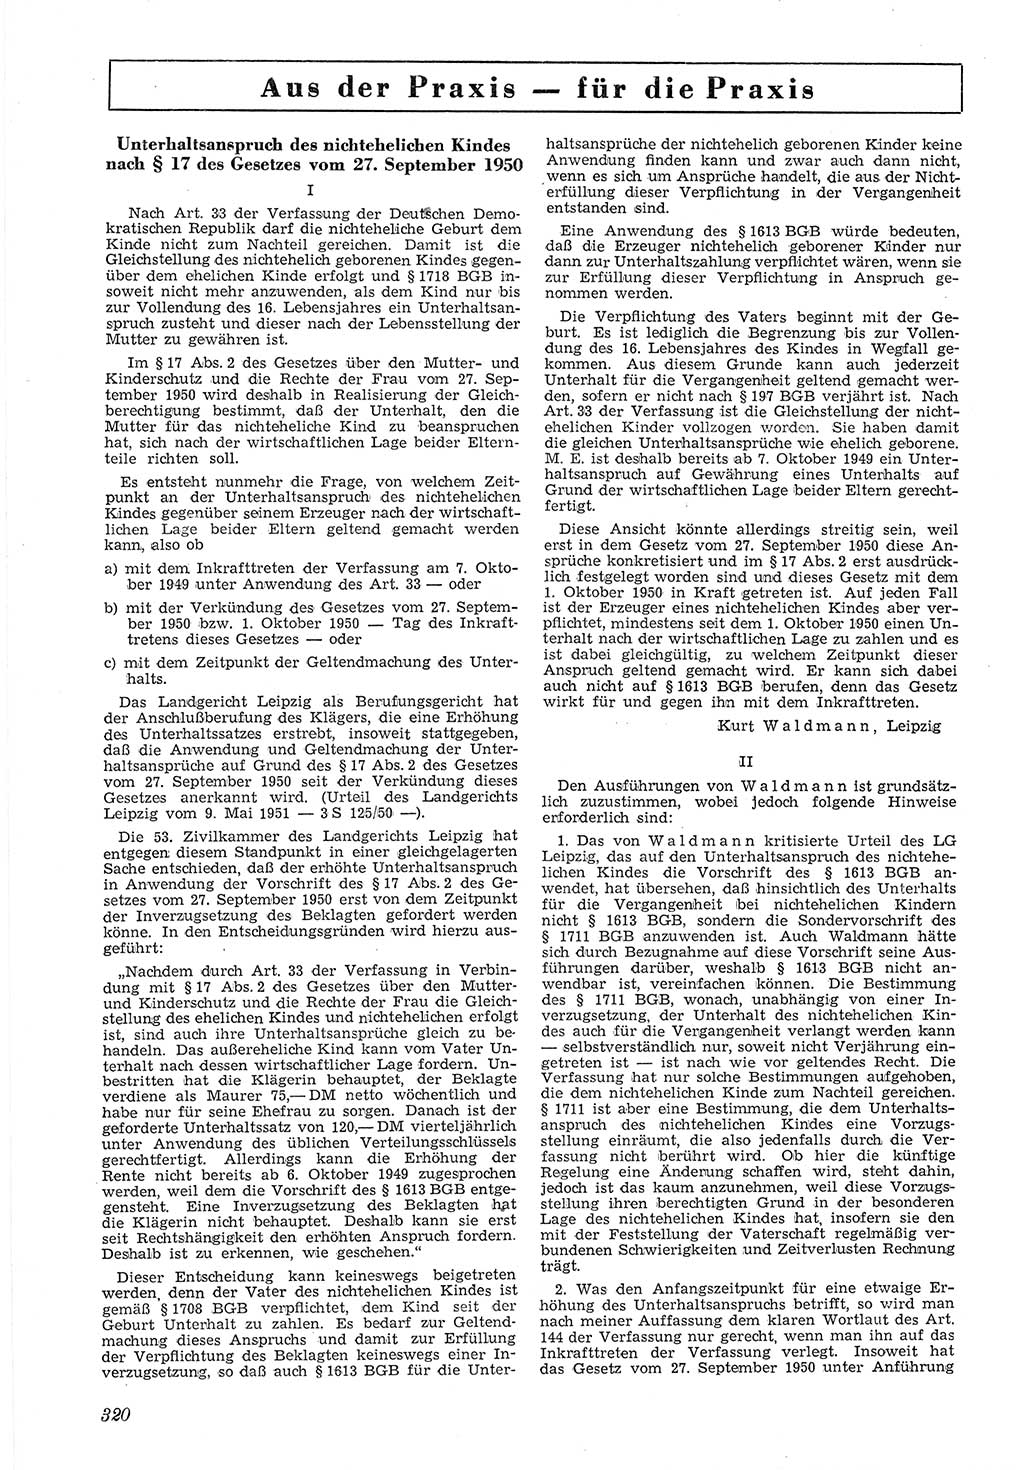 Neue Justiz (NJ), Zeitschrift für Recht und Rechtswissenschaft [Deutsche Demokratische Republik (DDR)], 5. Jahrgang 1951, Seite 320 (NJ DDR 1951, S. 320)